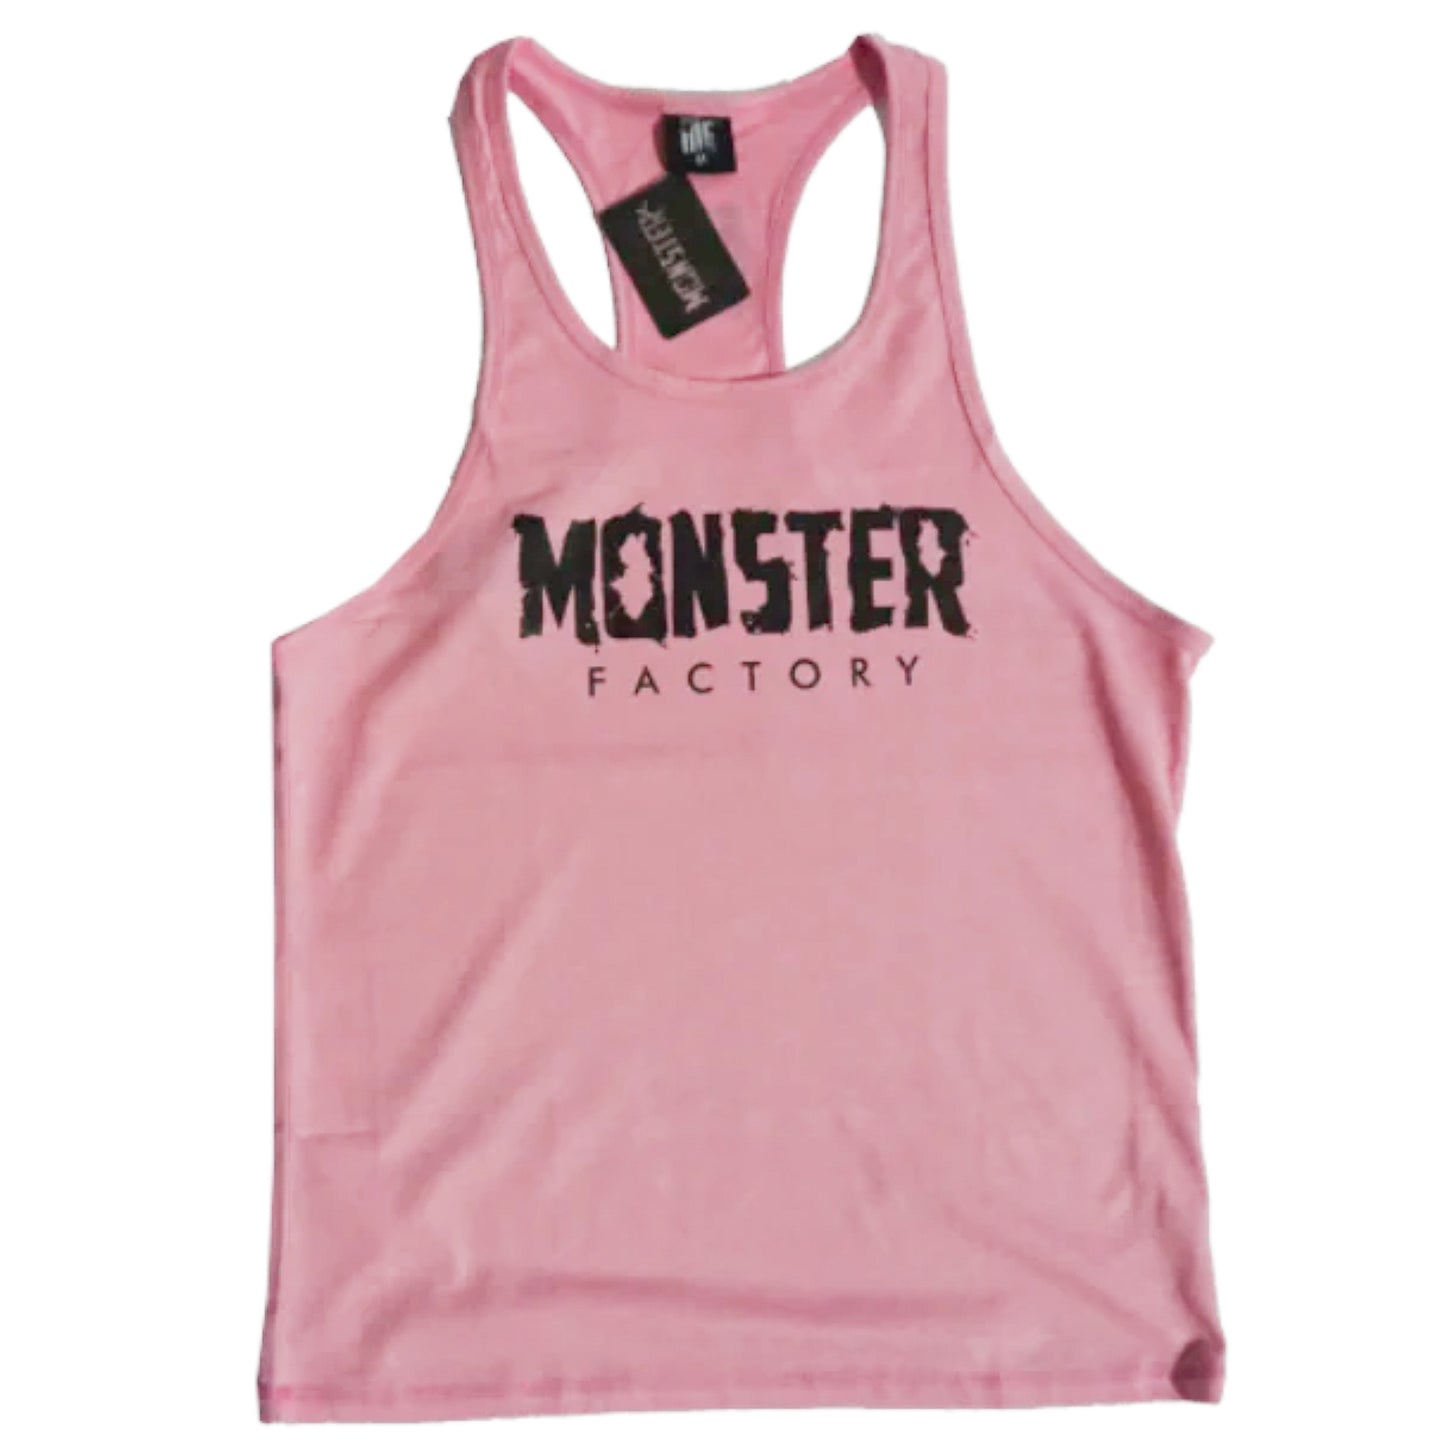 Monster factory stringer Vests